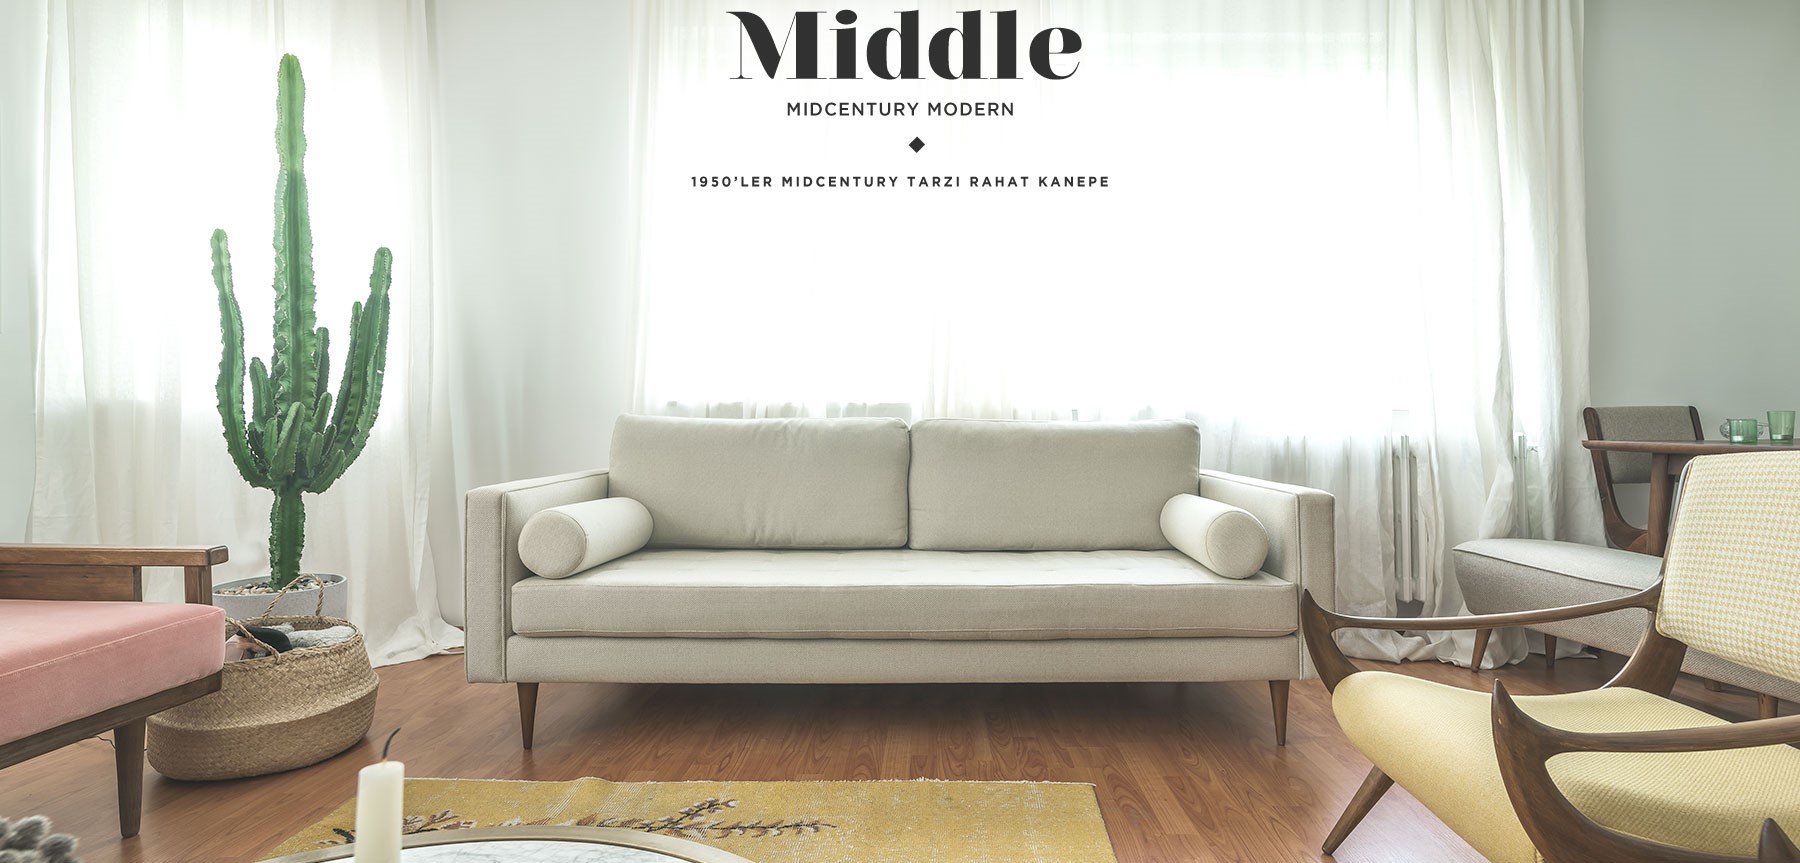 middle bold üçlü midcentury kanepe desenli'in resmi